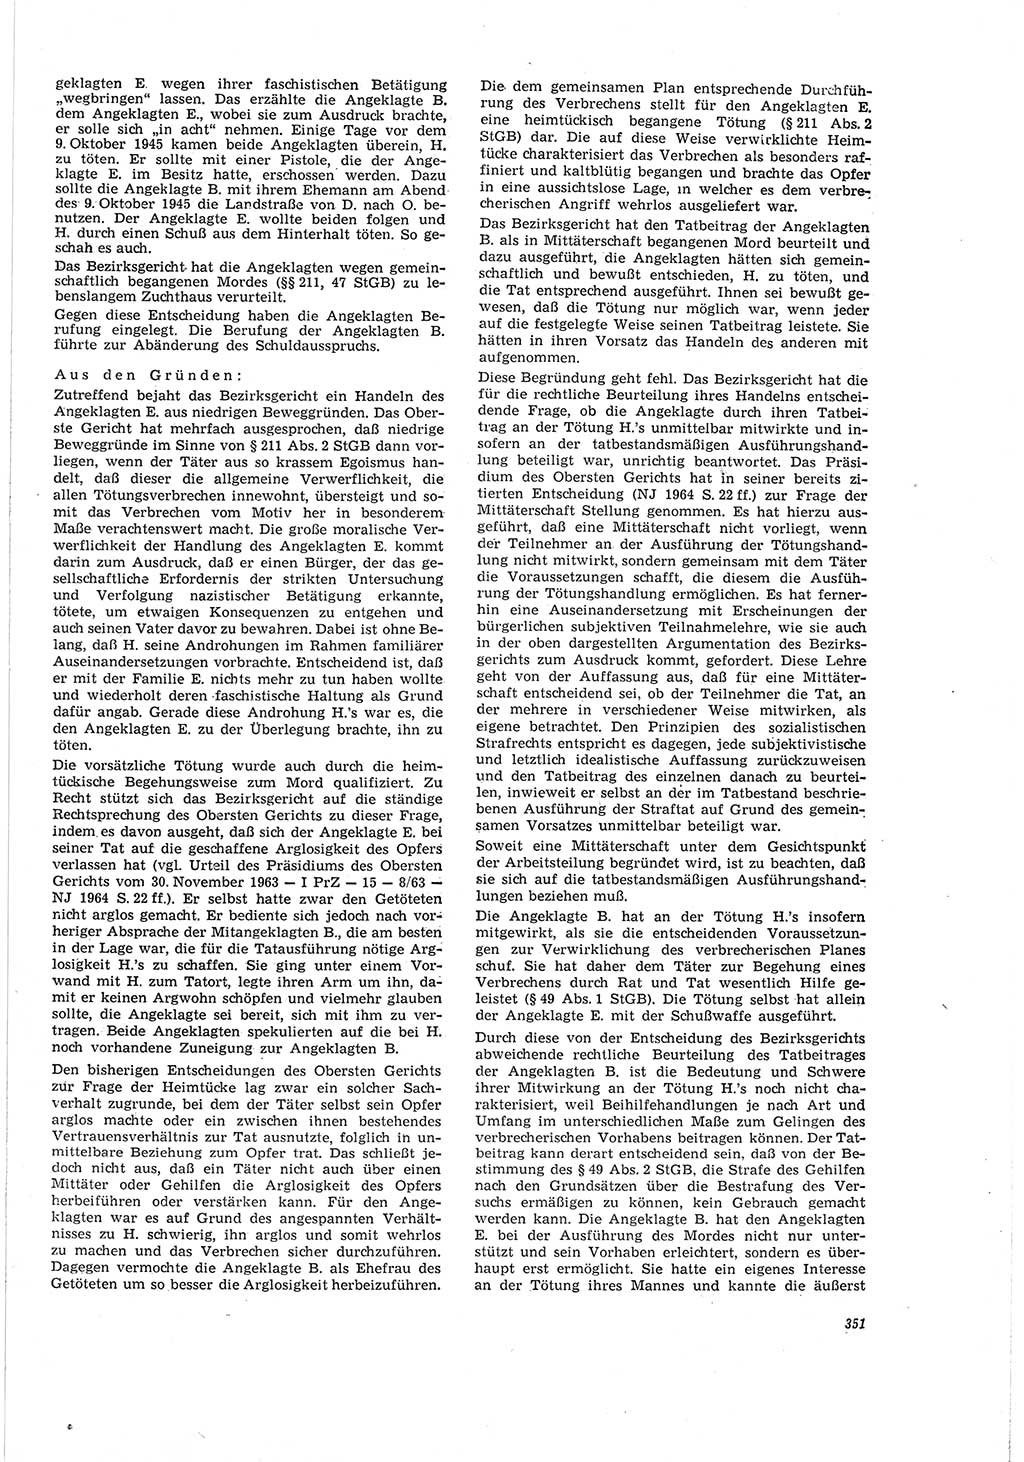 Neue Justiz (NJ), Zeitschrift für Recht und Rechtswissenschaft [Deutsche Demokratische Republik (DDR)], 20. Jahrgang 1966, Seite 351 (NJ DDR 1966, S. 351)